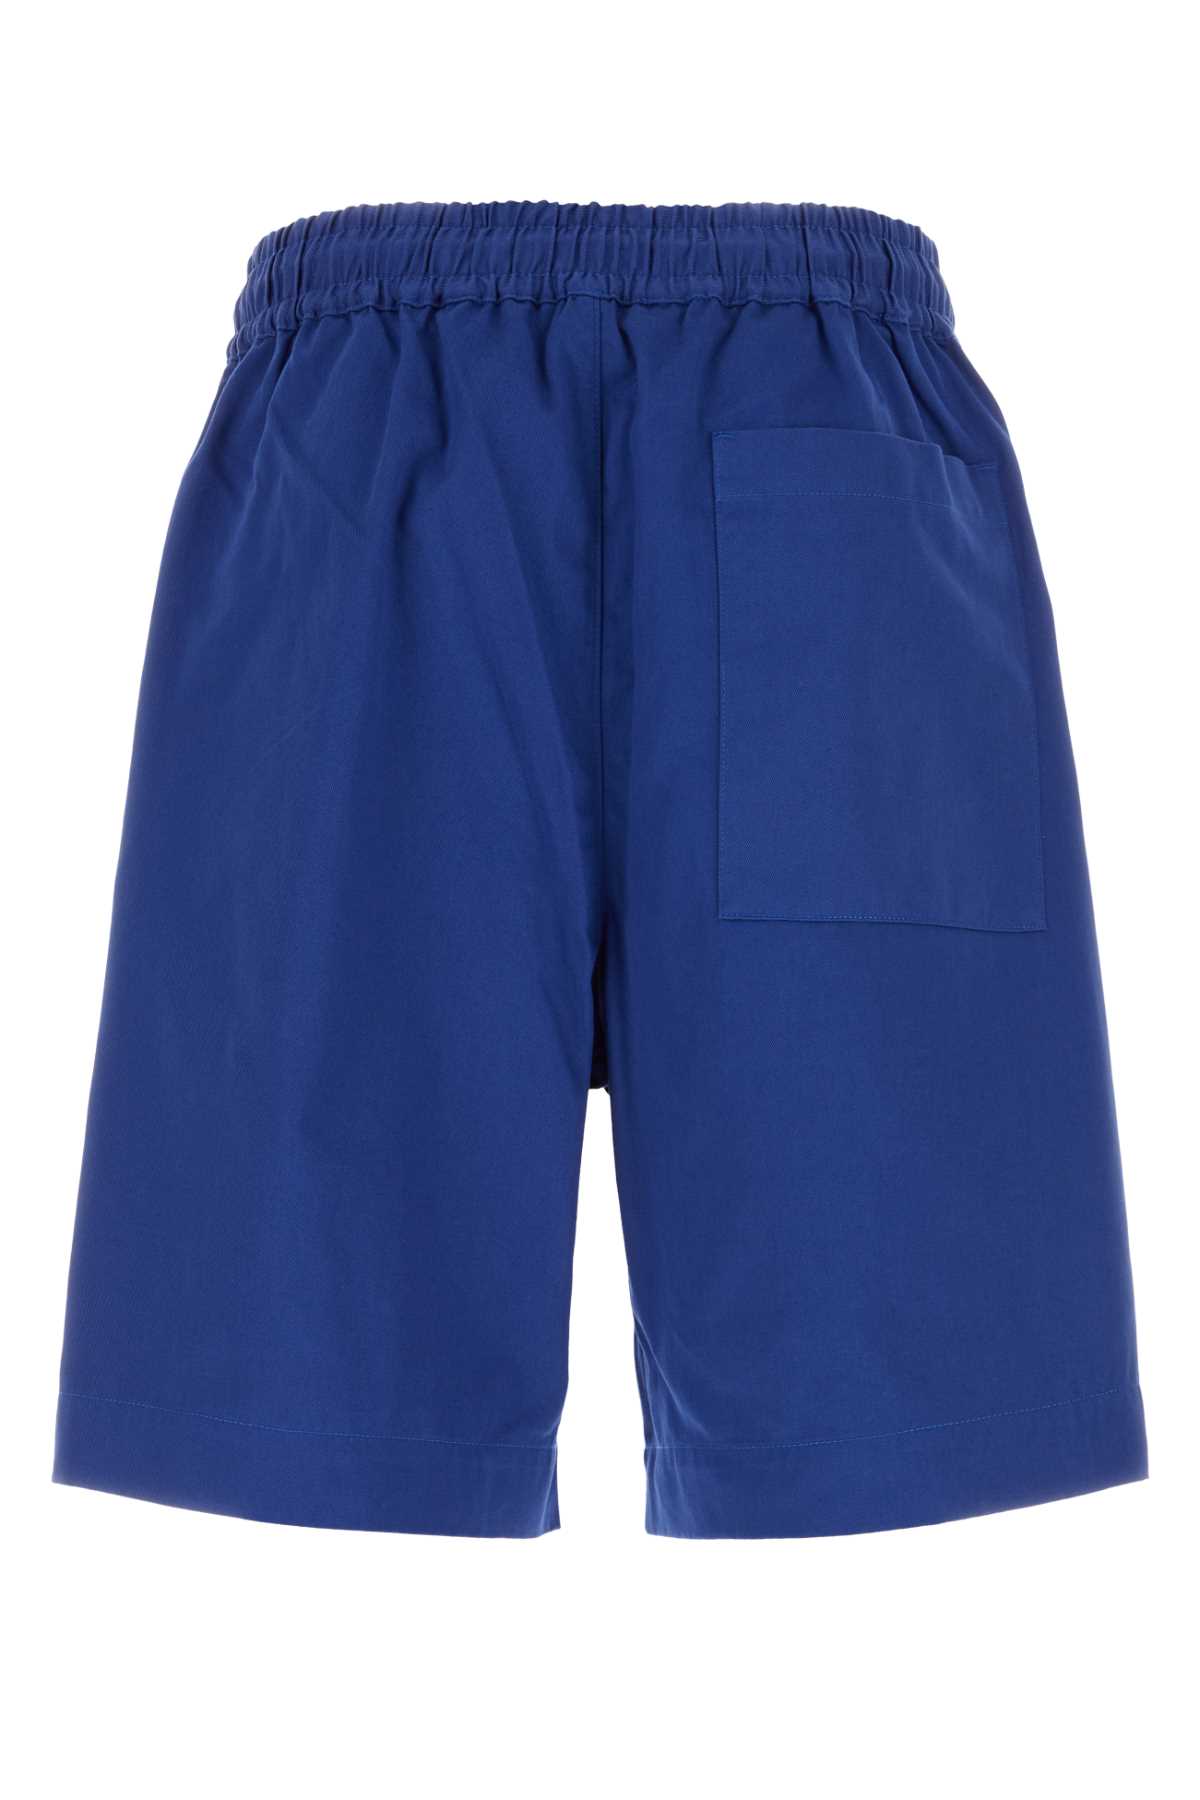 Emporio Armani Blue Cotton Bermuda Shorts In Oceano